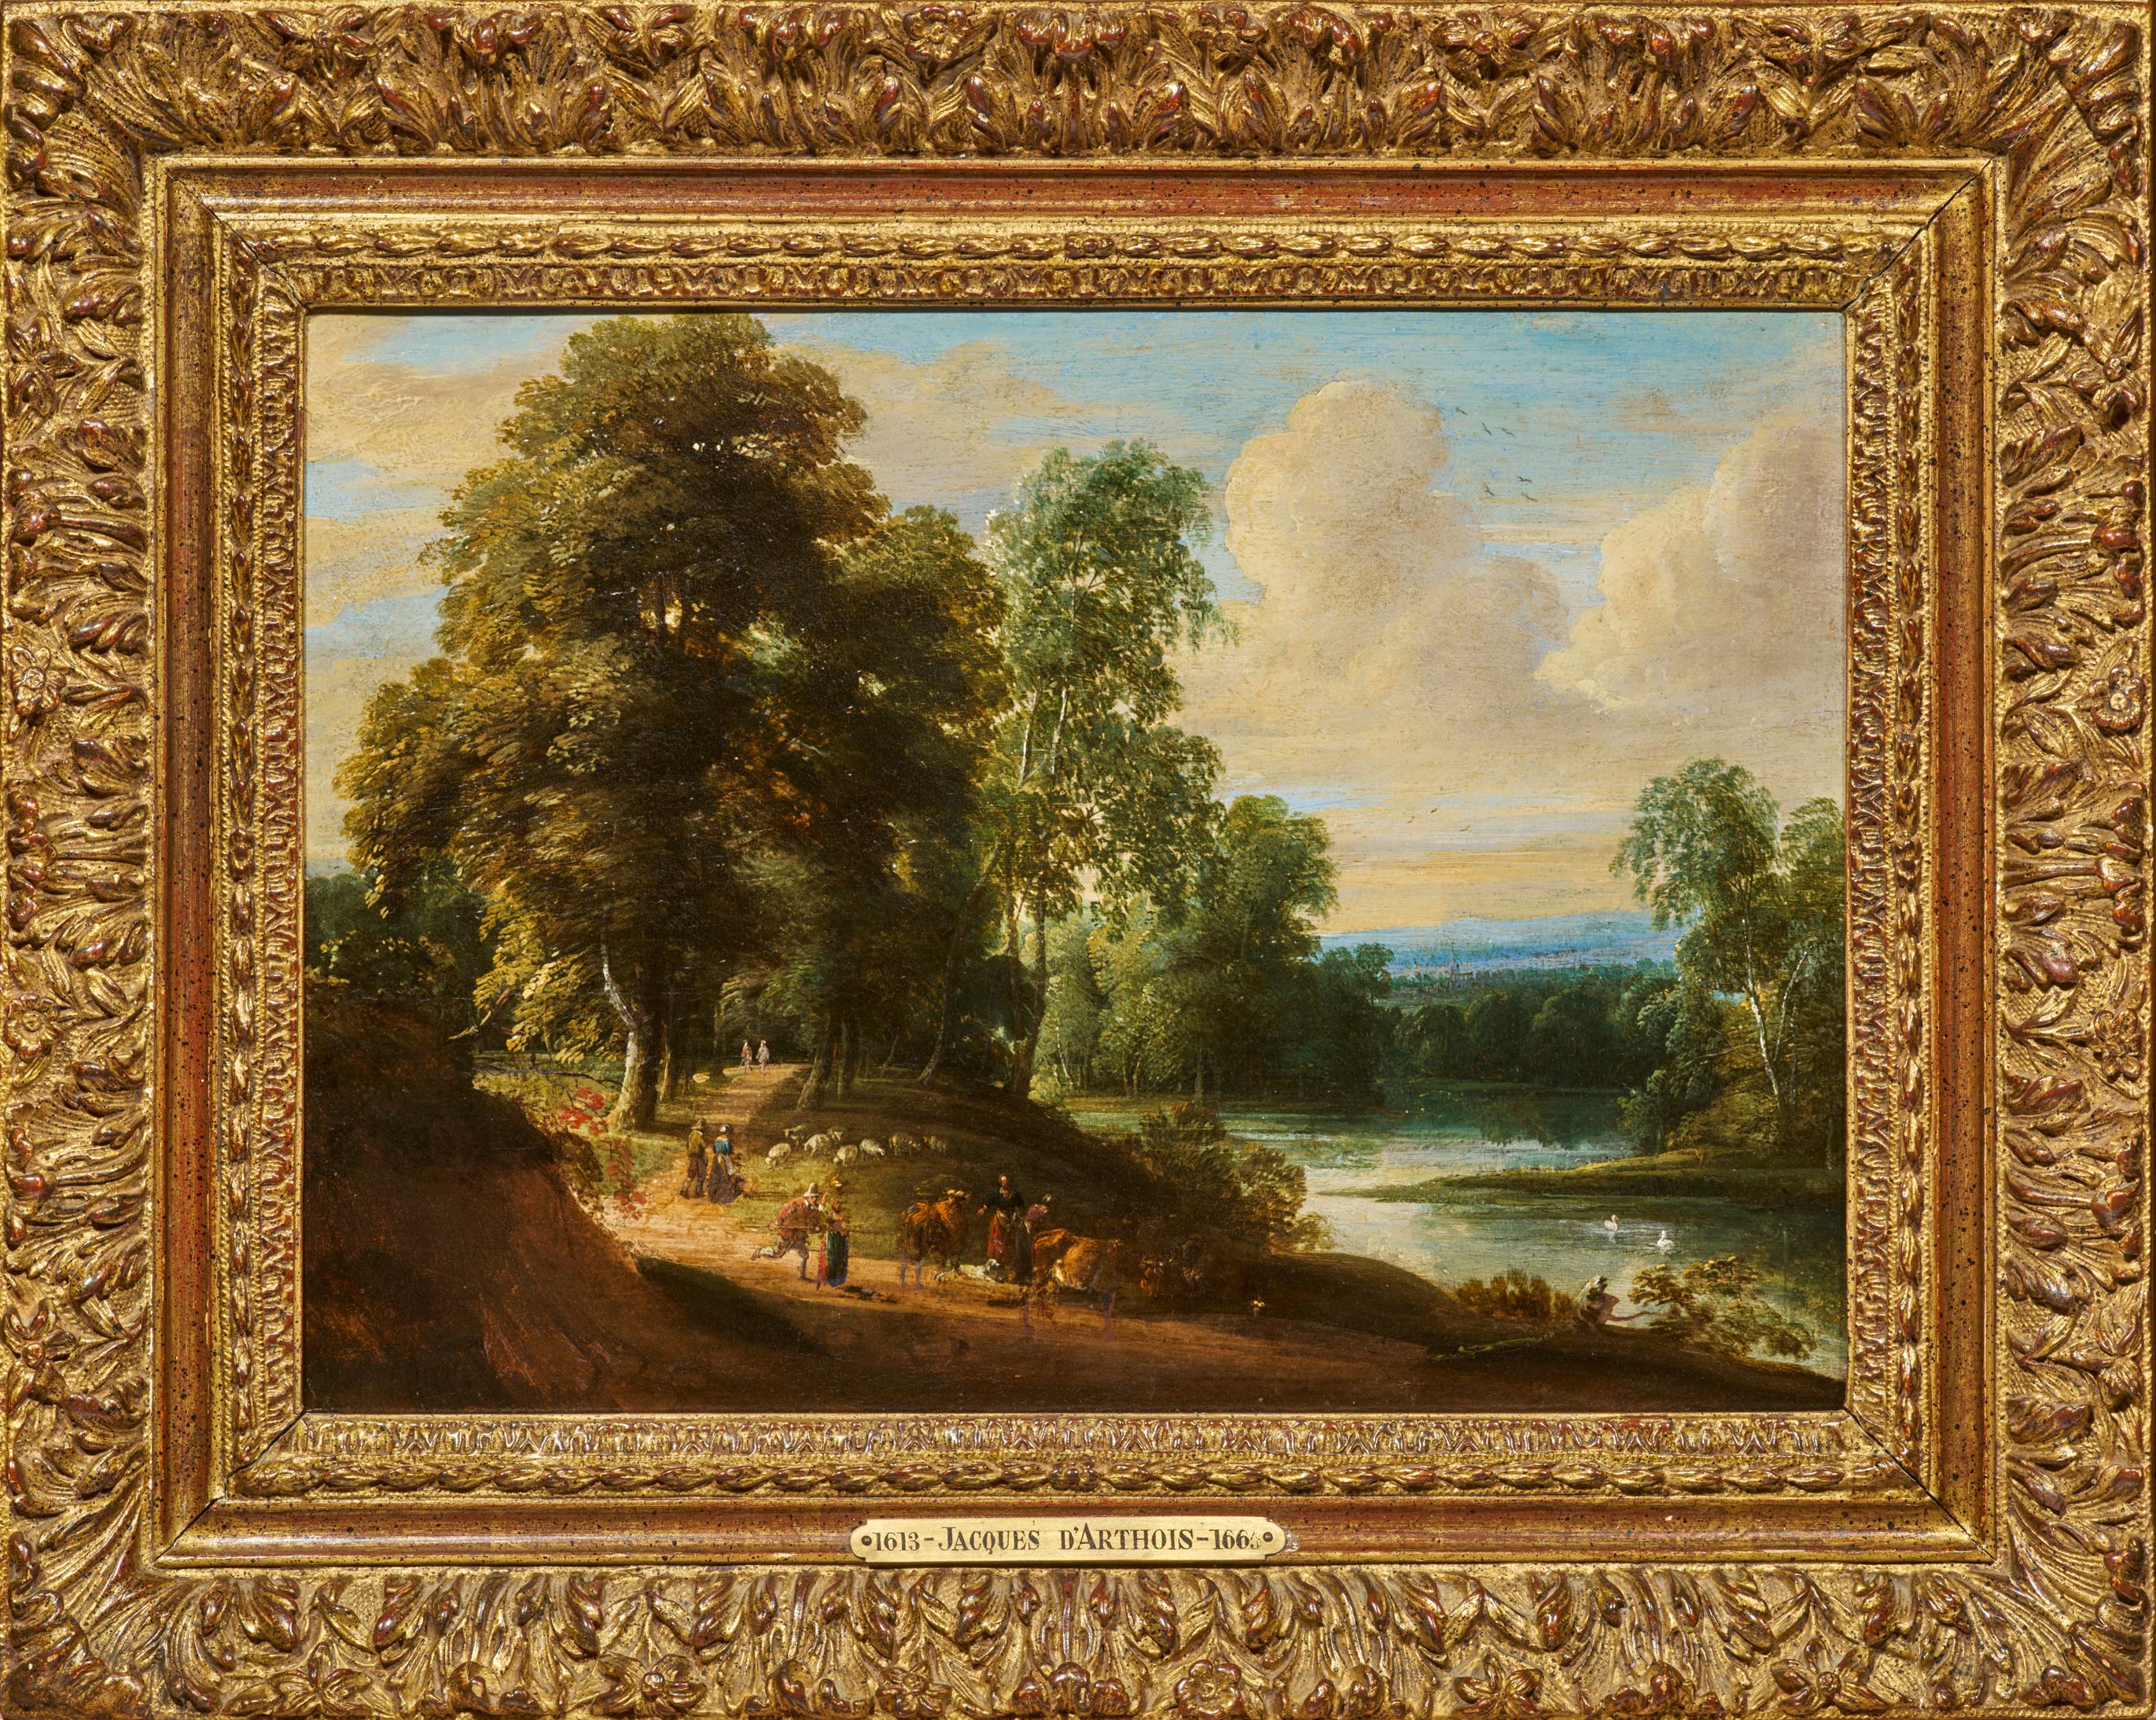 Paysage de bord de rivière, peinture sur panneau de chêne de Jacques d'Arthois (1636 - 1686) 1